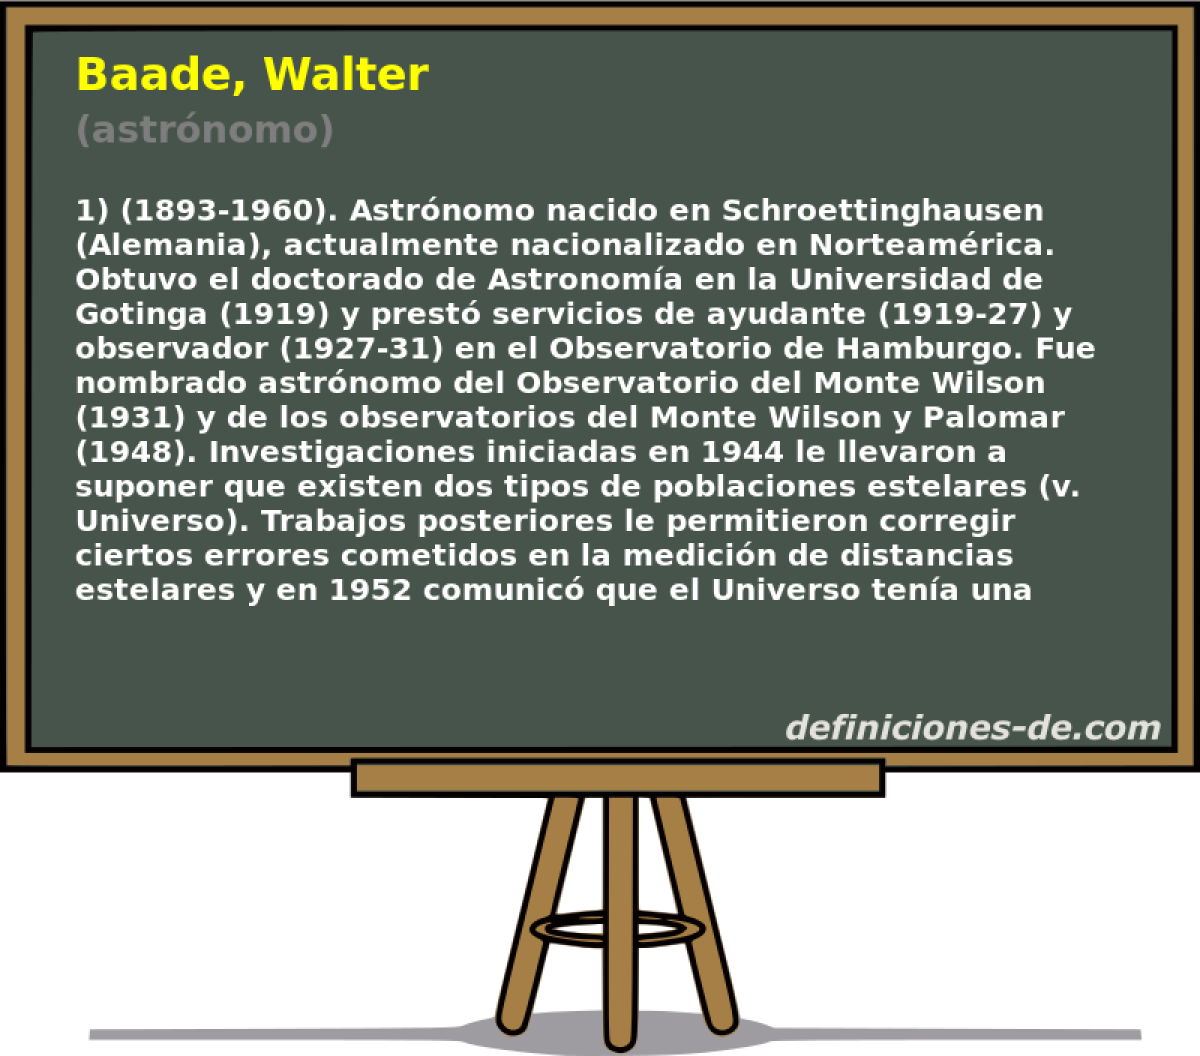 Baade, Walter (astrnomo)